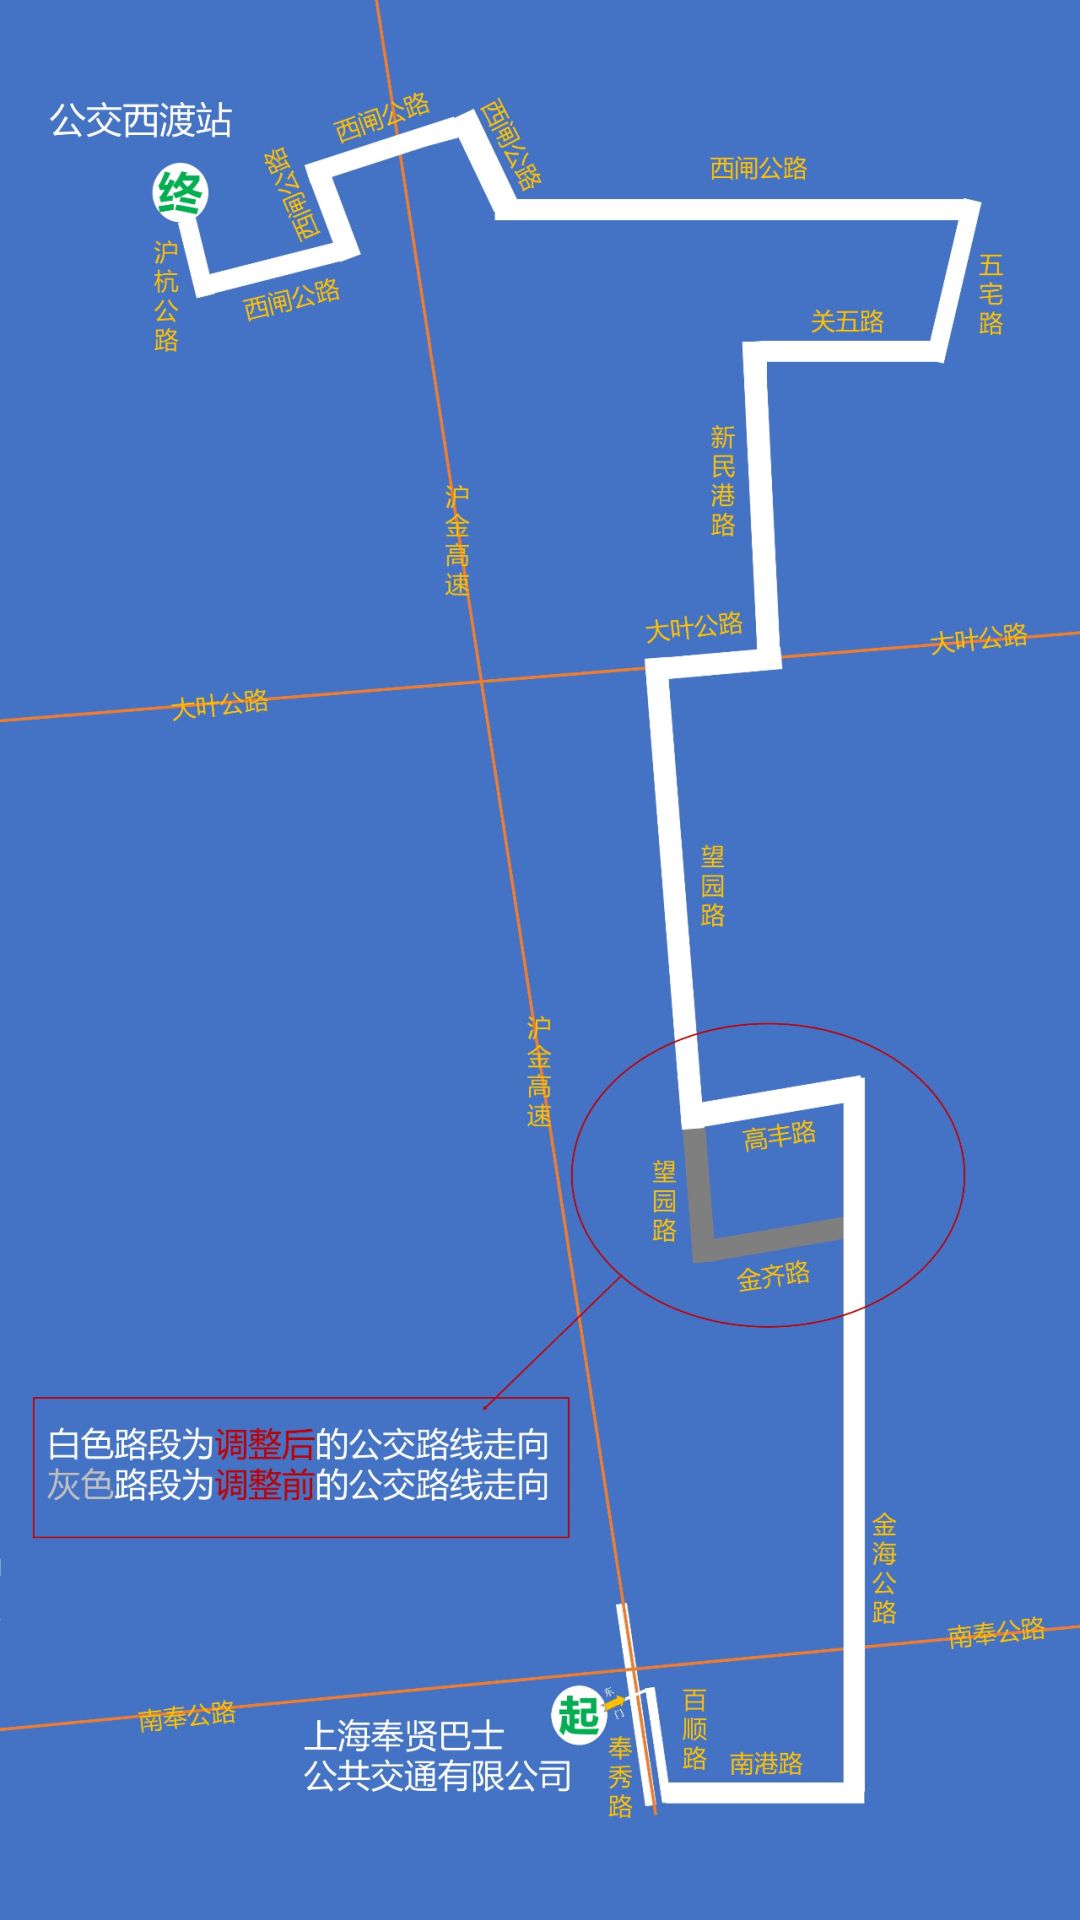 【提示】3月10日起公交"奉贤11路"线路走向调整